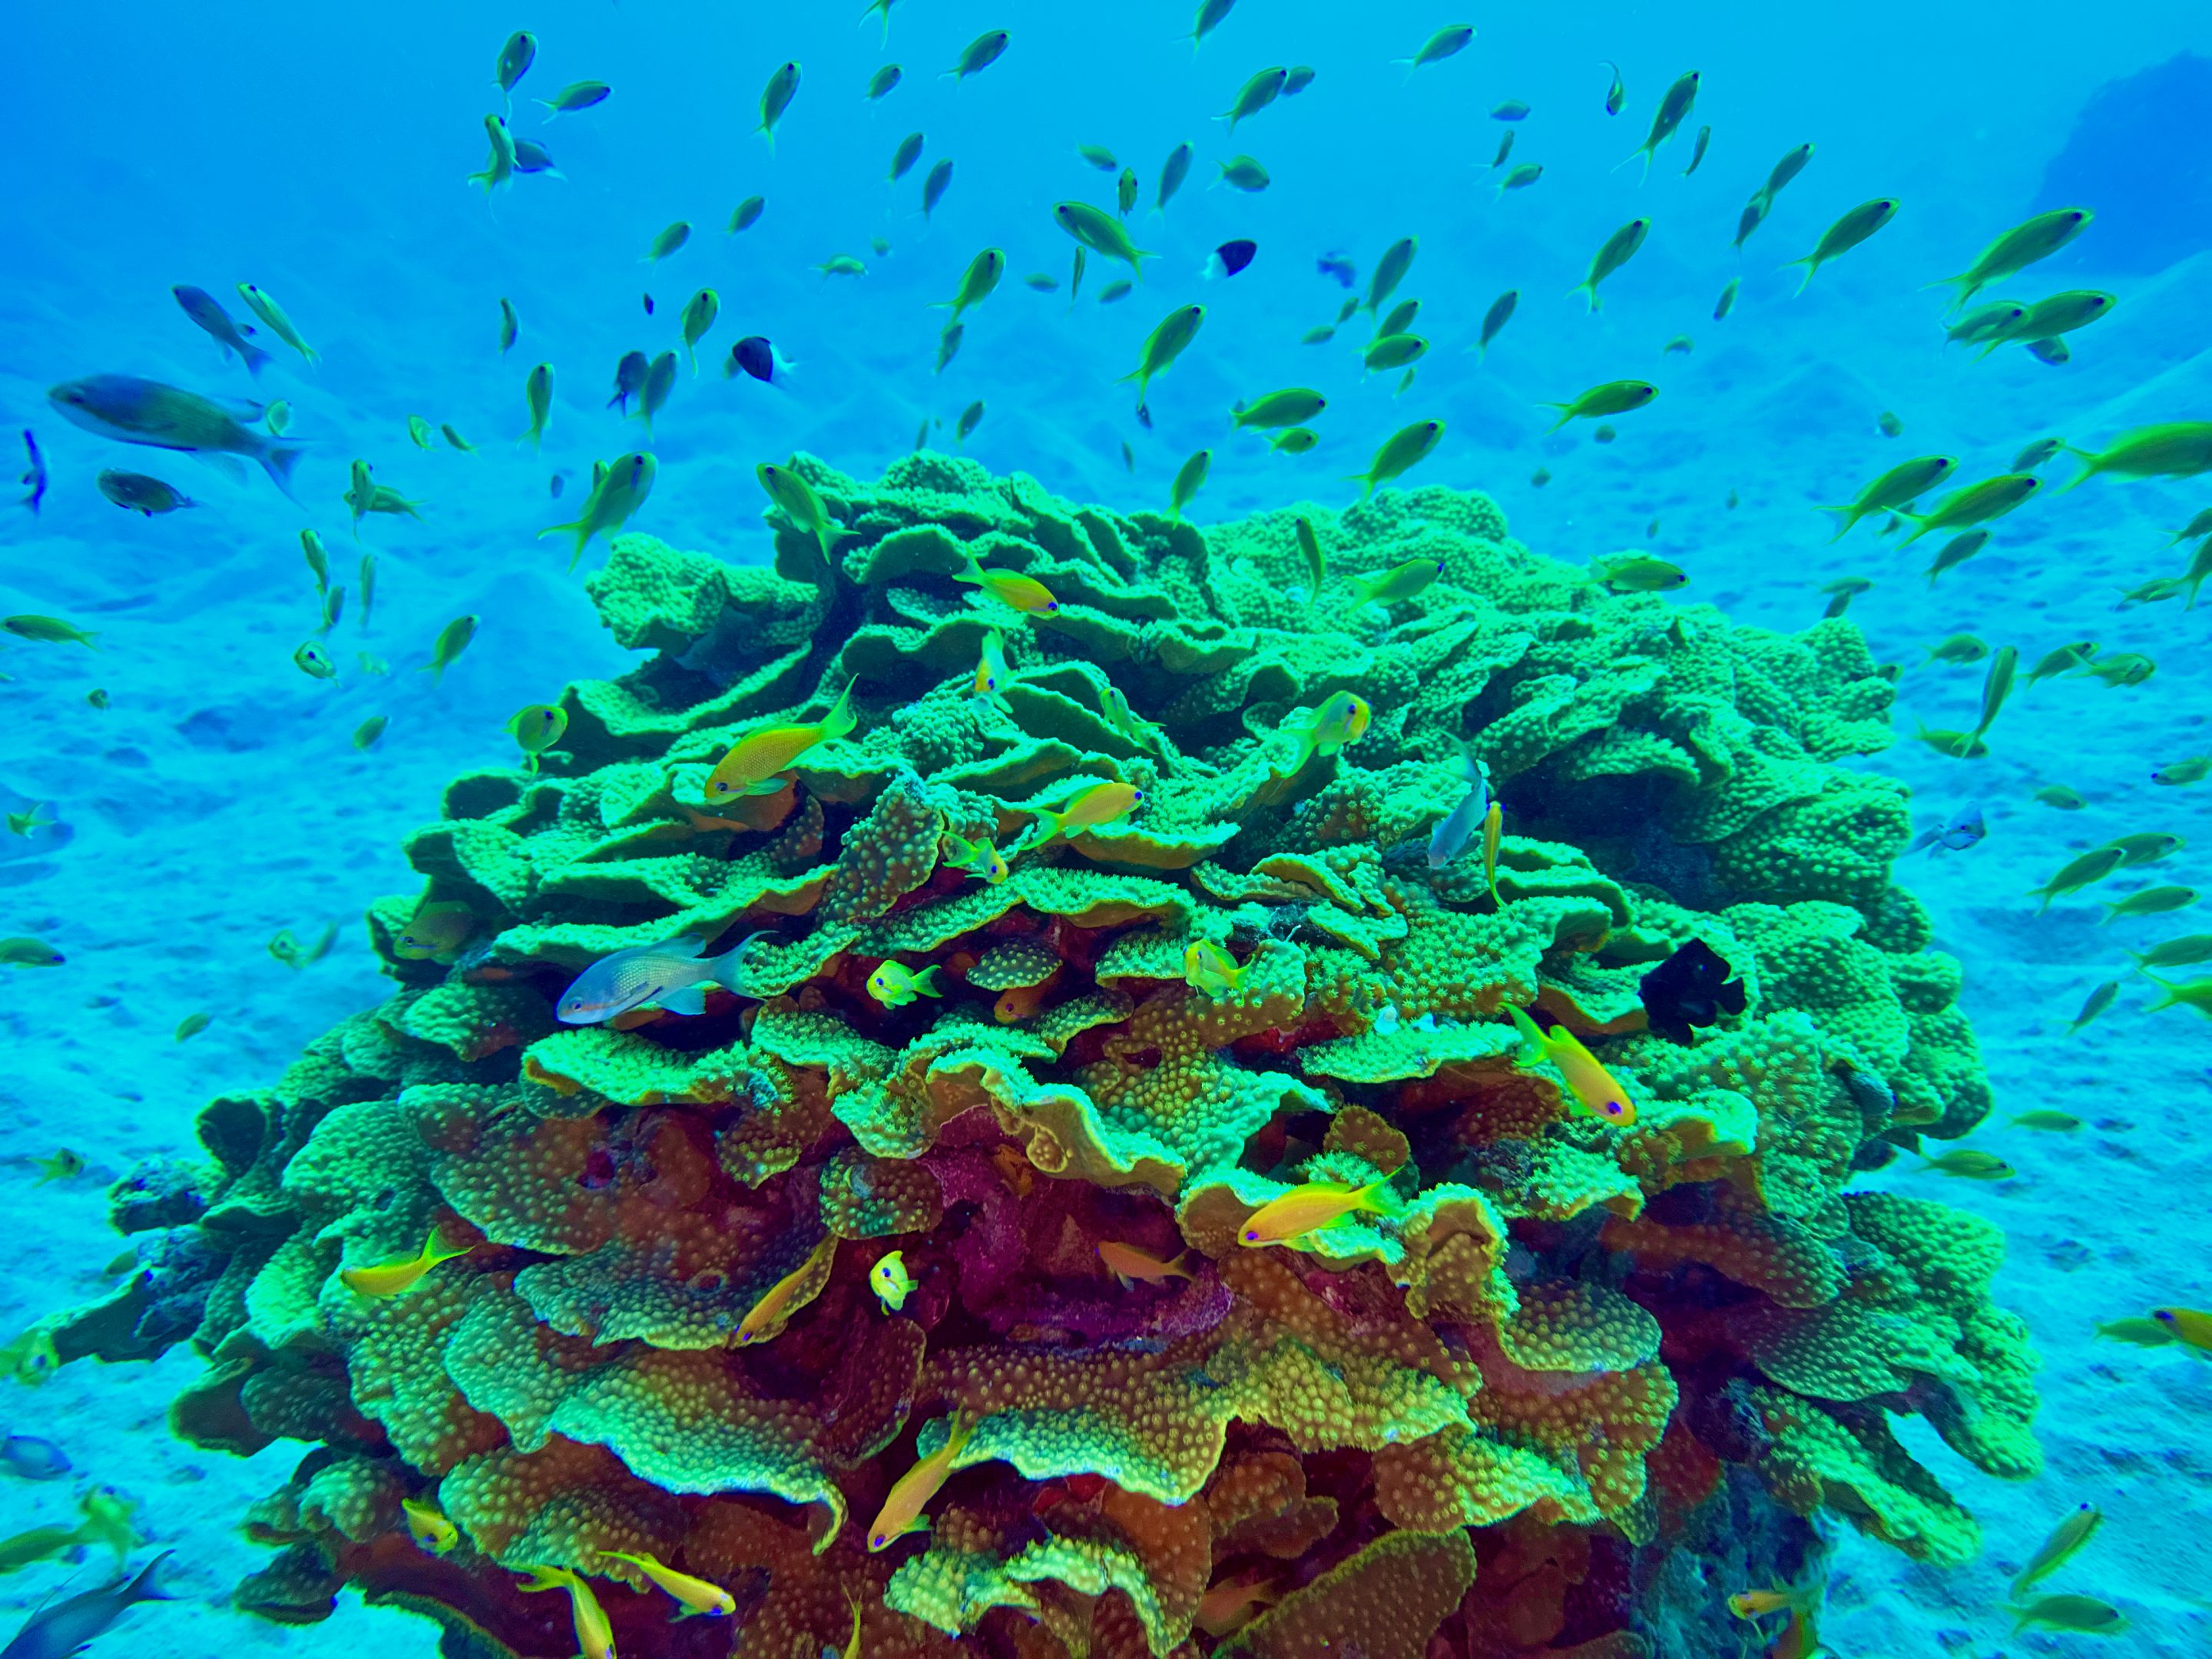 Abu Dabbab bietet eine unheimlich beeindruckende Unterwasserwelt mit bunten Korallen, unzähligen Fischen und Schildkröten.